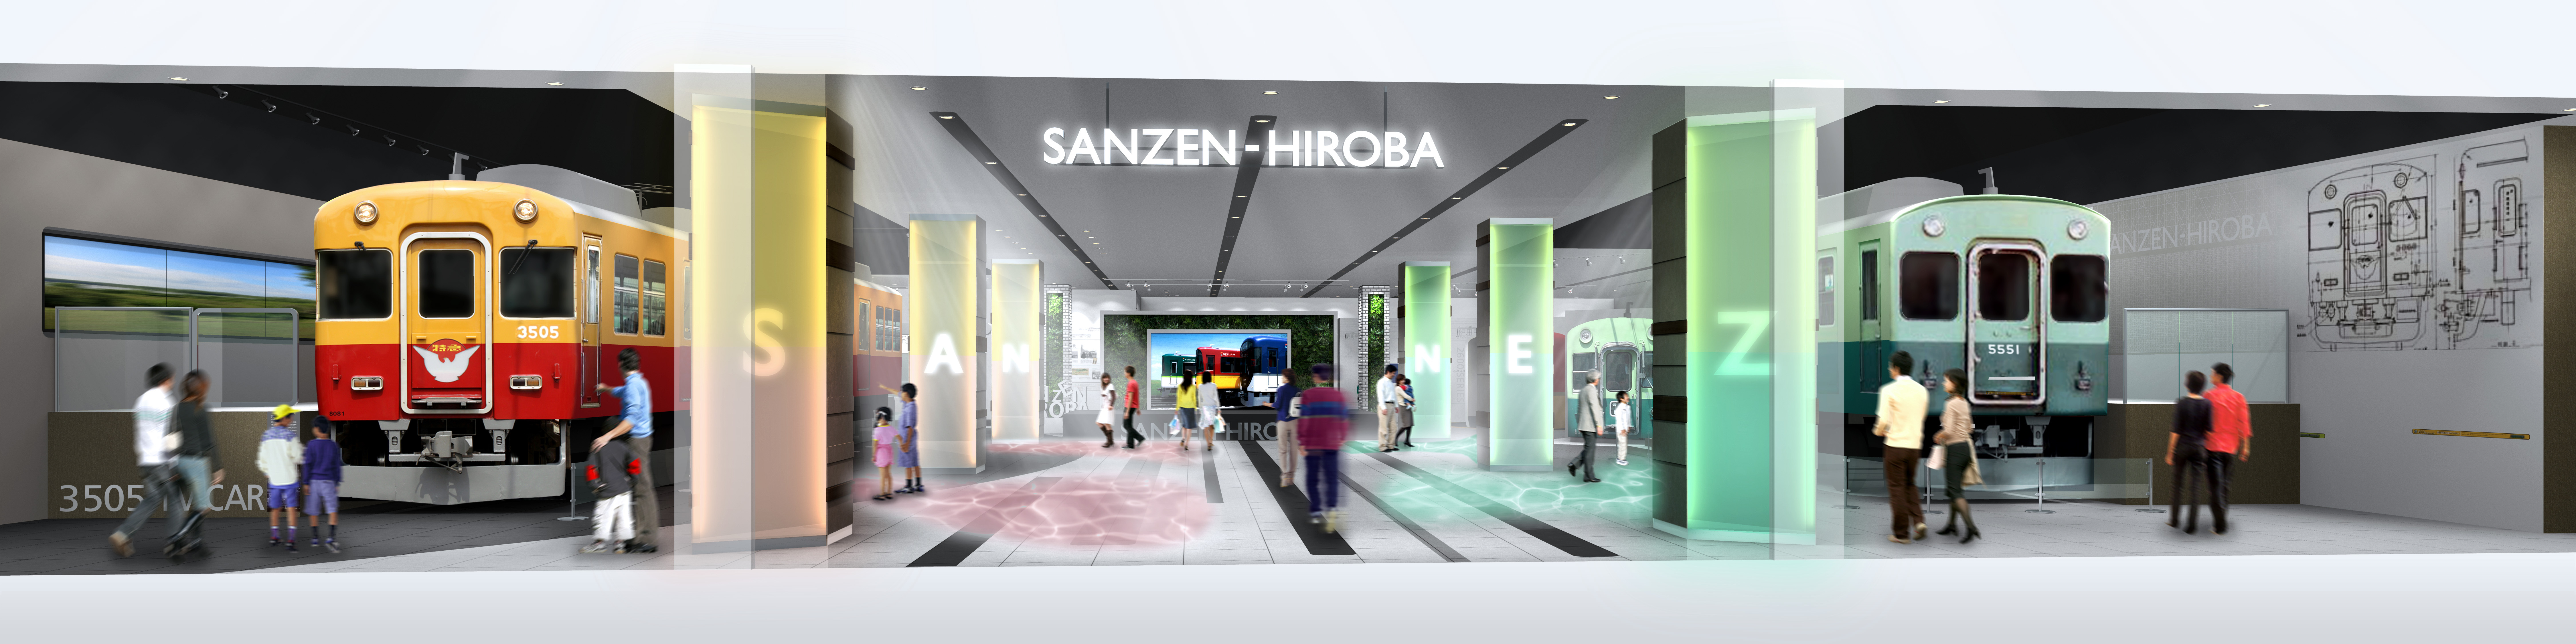 車両展示が加わり「SANZEN-HIROBA」が4月21日(金)にリニューアル 